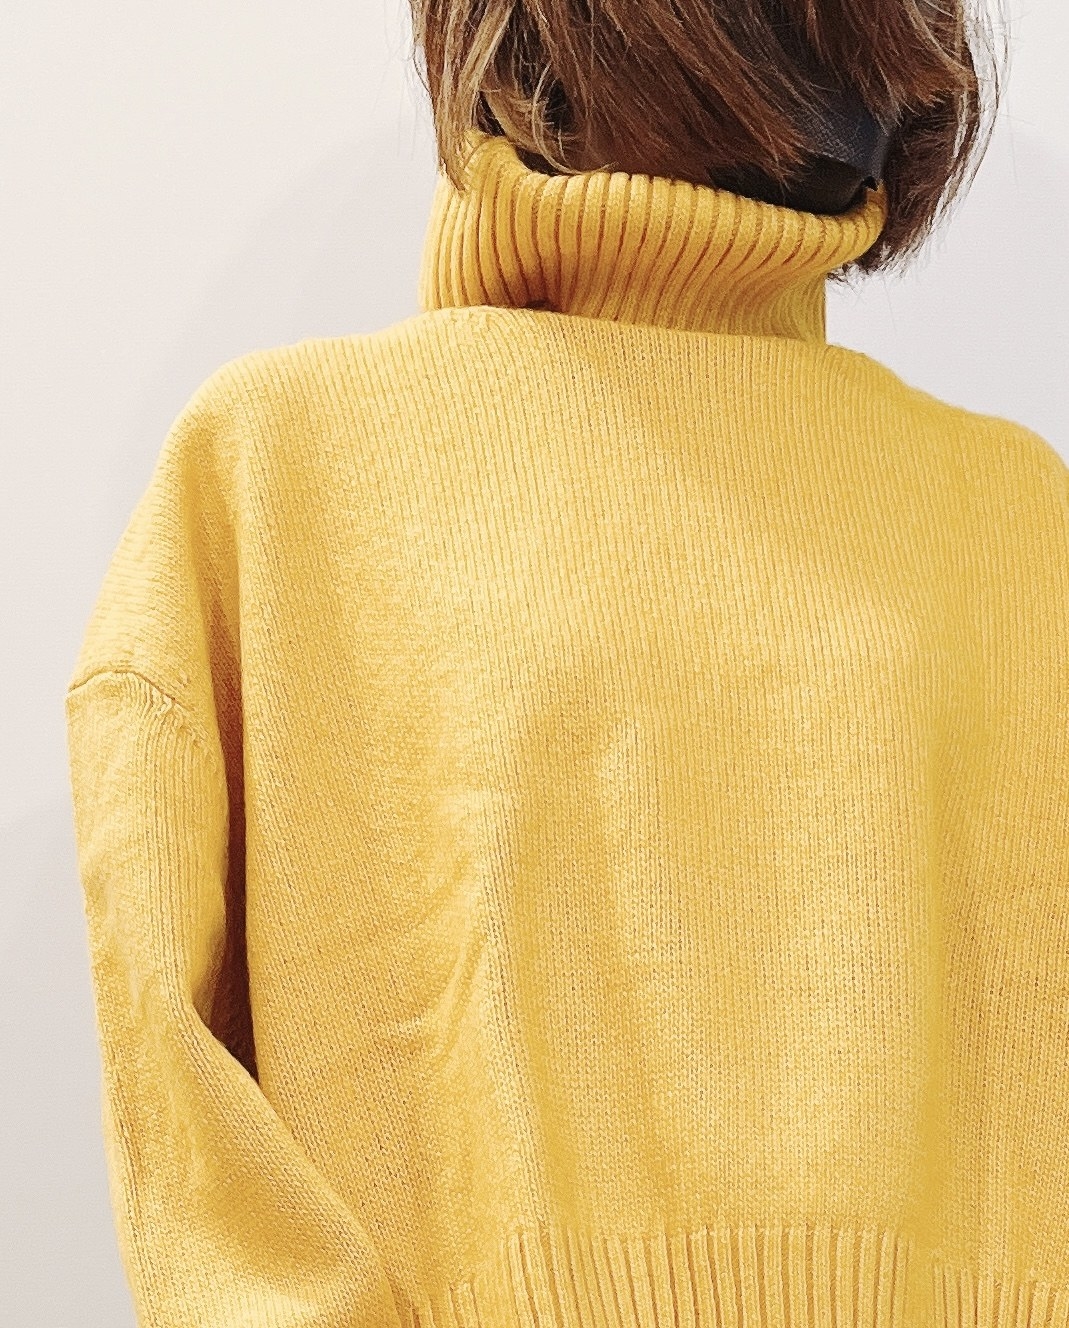 H＆M（エイチアンドエム）のおすすめのレディースアイテム「オーバーサイズ タートルネックセーター」